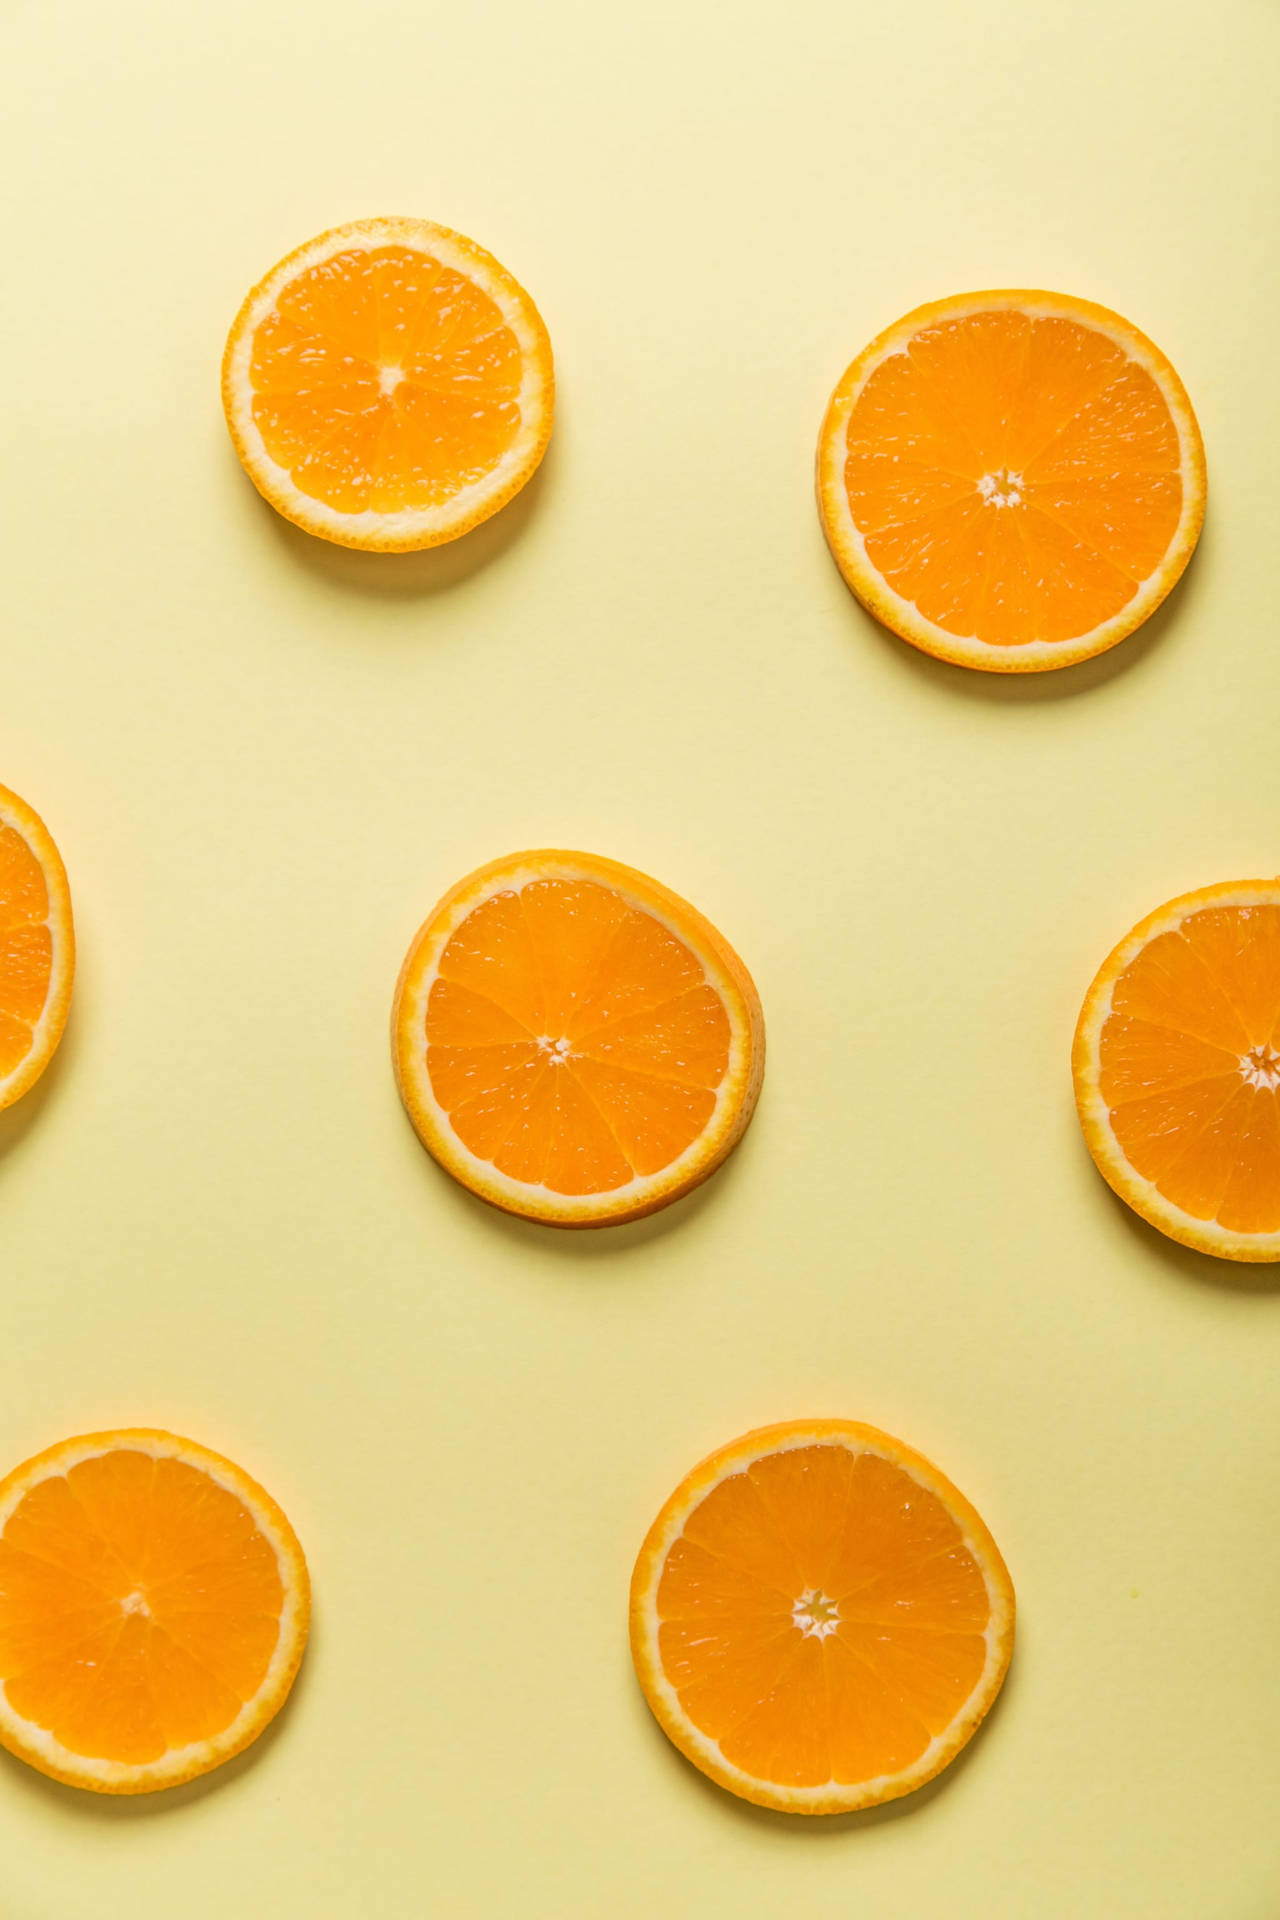 Một hình nền cam tươi tắn sẽ khiến bạn cảm thấy như đang ở giữa một chiếc vườn cây trái xum xuê. Với những chùm cam đủ sắc màu, bạn sẽ thoải mái ngắm nhìn và thư giãn sau một ngày dài.